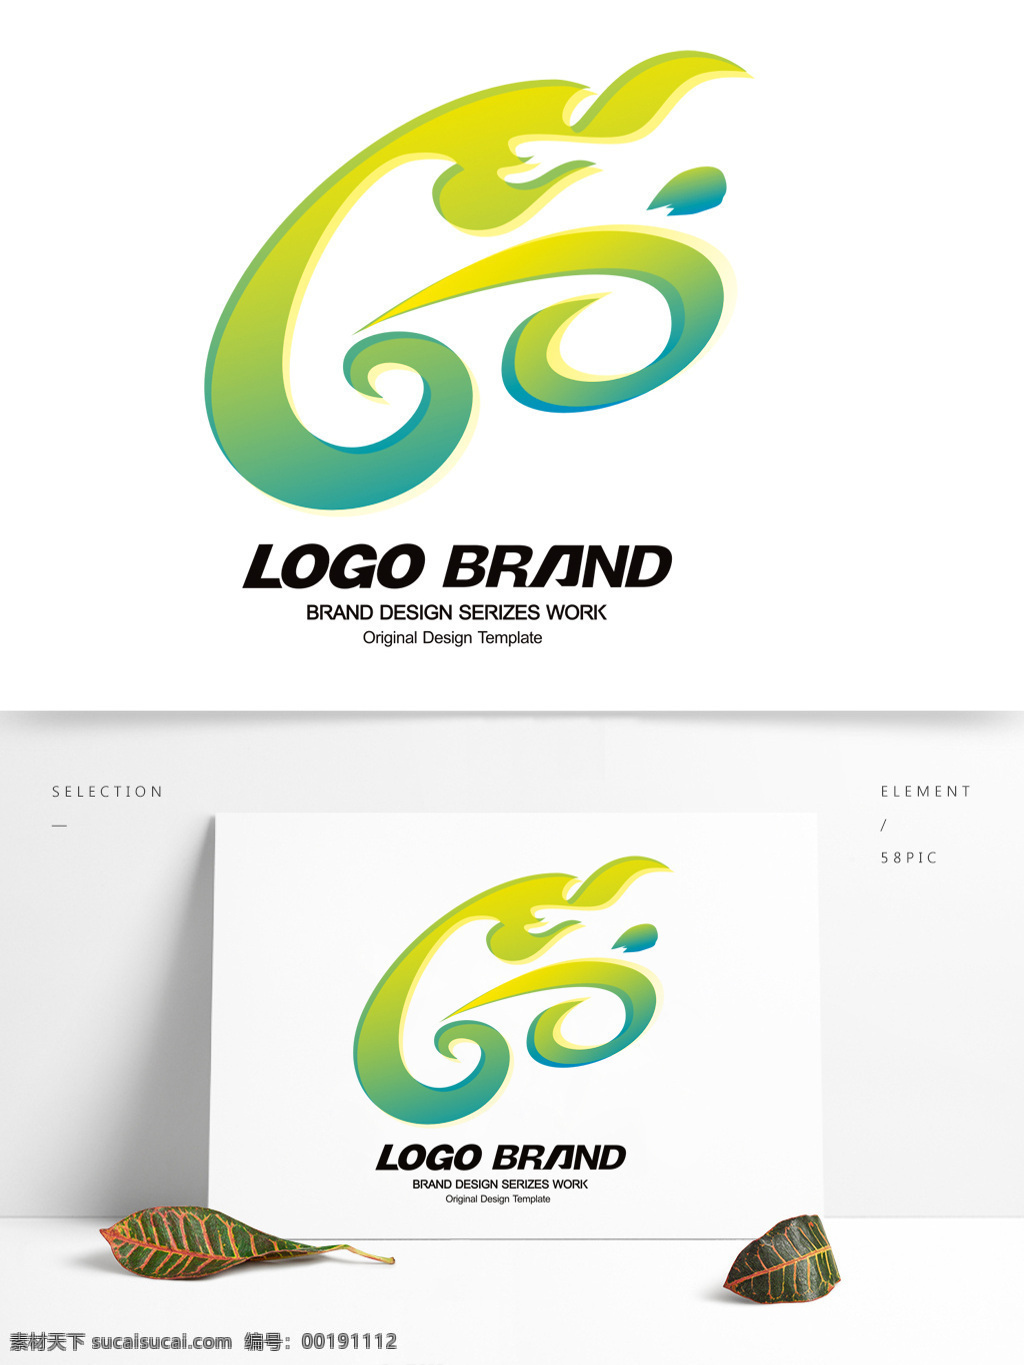 矢量 创意 周年 绿黄色 渐变 logo c 字母 标志设计 d 公司 公司标志设计 企业 会徽标志设计 企业标志设计